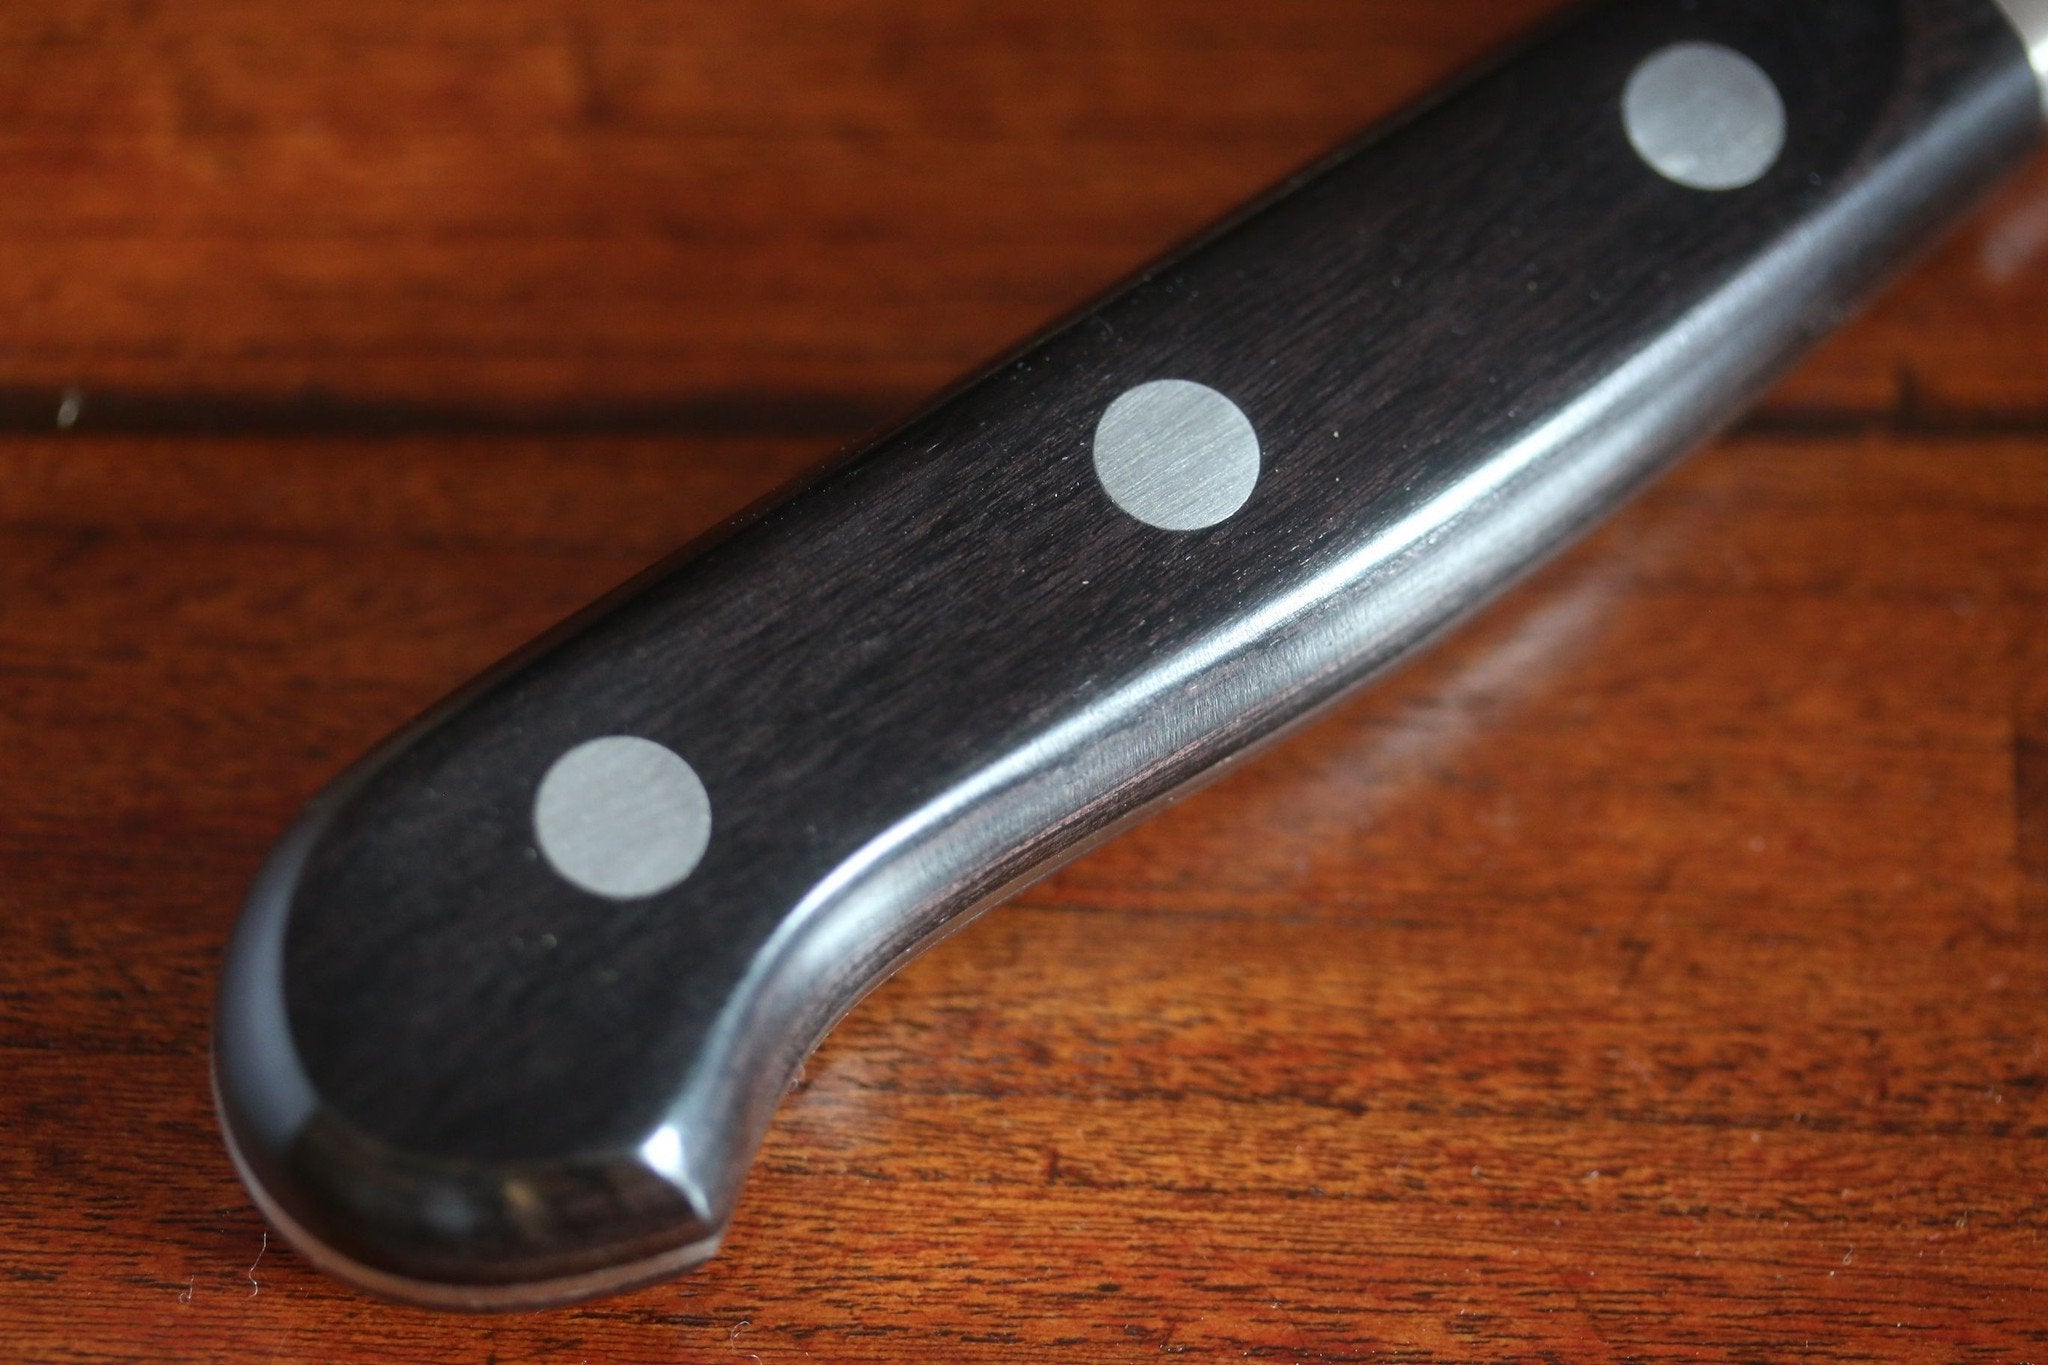 Couteau Misono 440 office 15 cm